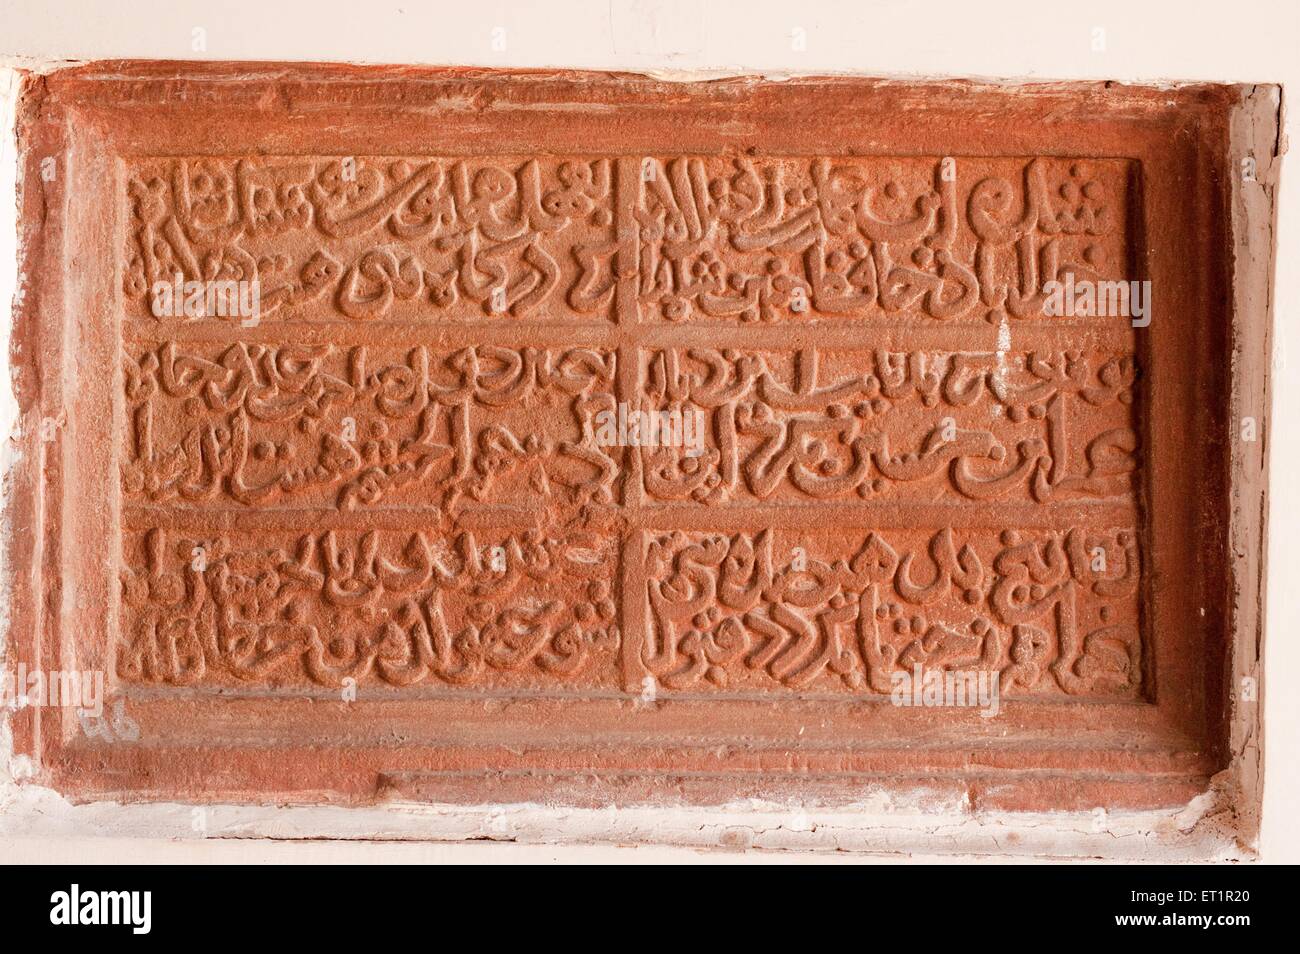 Inscription in arbi ; farshi on stone at gujri mahal museum ; Gwalior ; Madhya Pradesh ; India Stock Photo